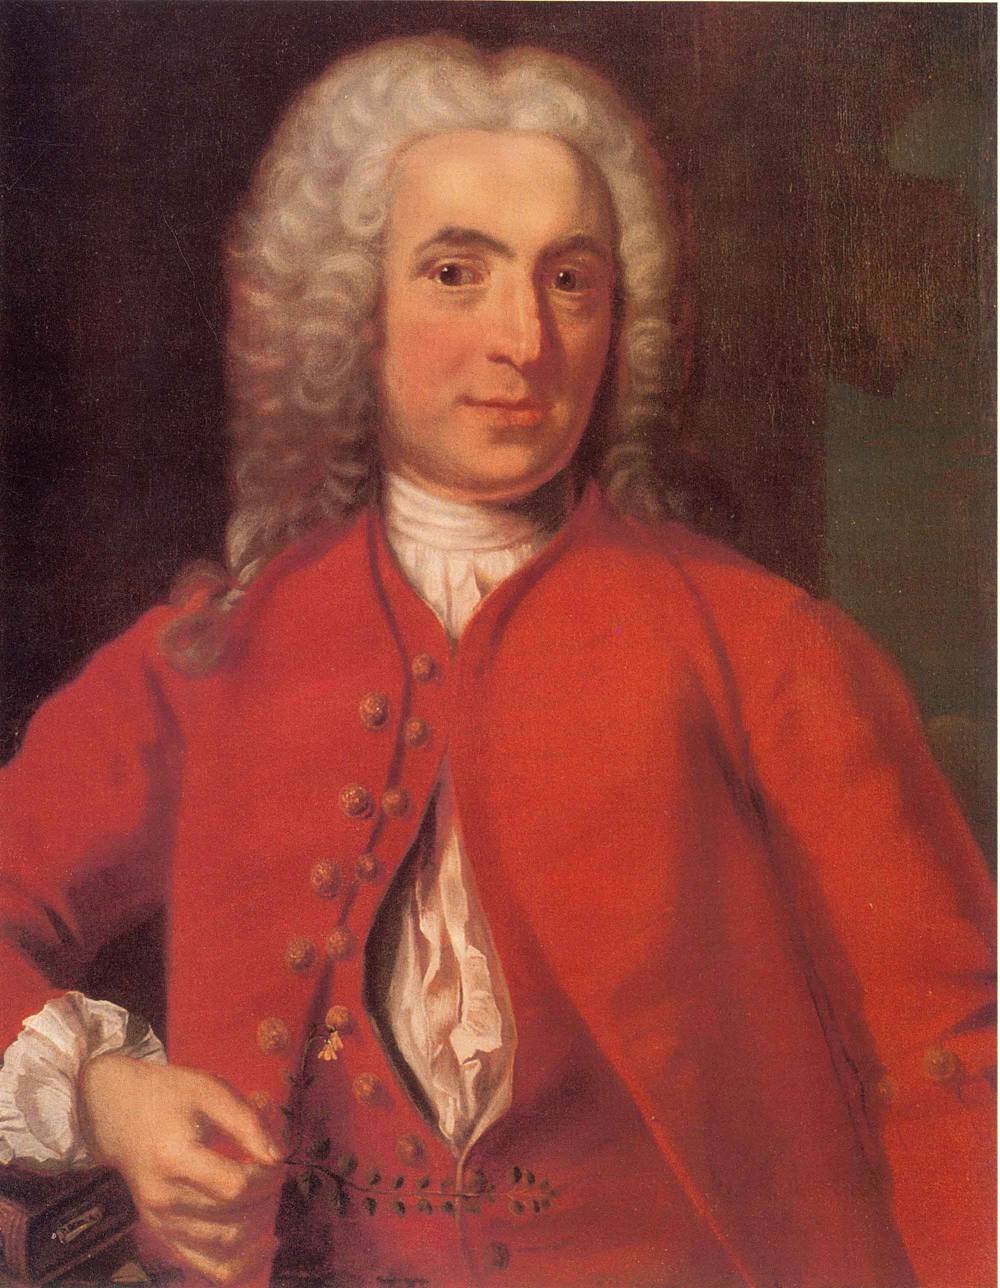 23 мая – 310 лет со дня рождения КарлаЛиннея (1707-1778), шведского естествоиспытателя, ученого.